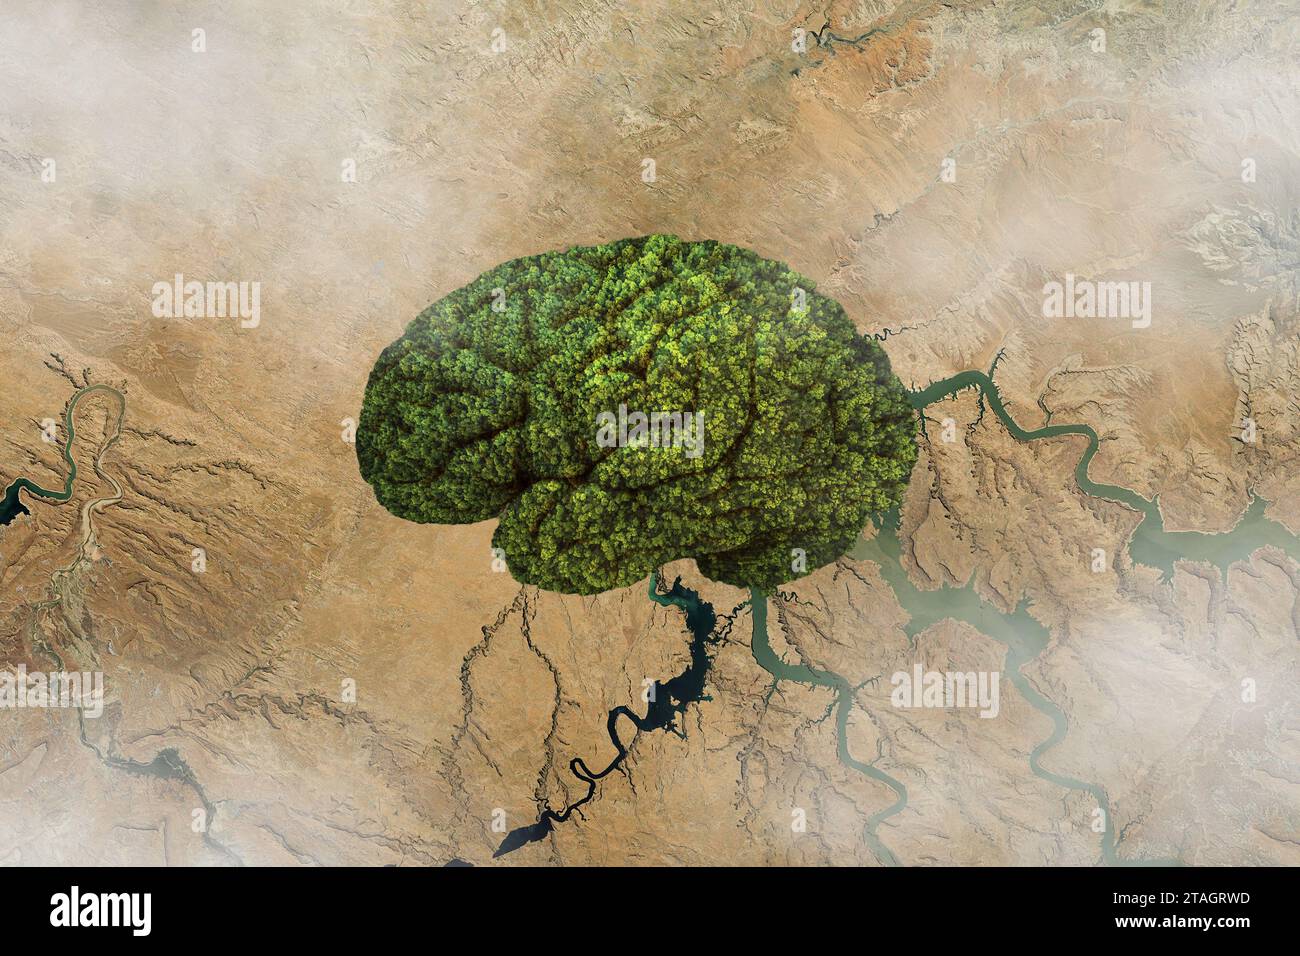 Foreste a forma di cervello nel deserto, vista aerea. Pensare e riscaldamento globale, concetto. Idea creativa e crescita delle piante verdi. Cervello sano e pensiero Foto Stock